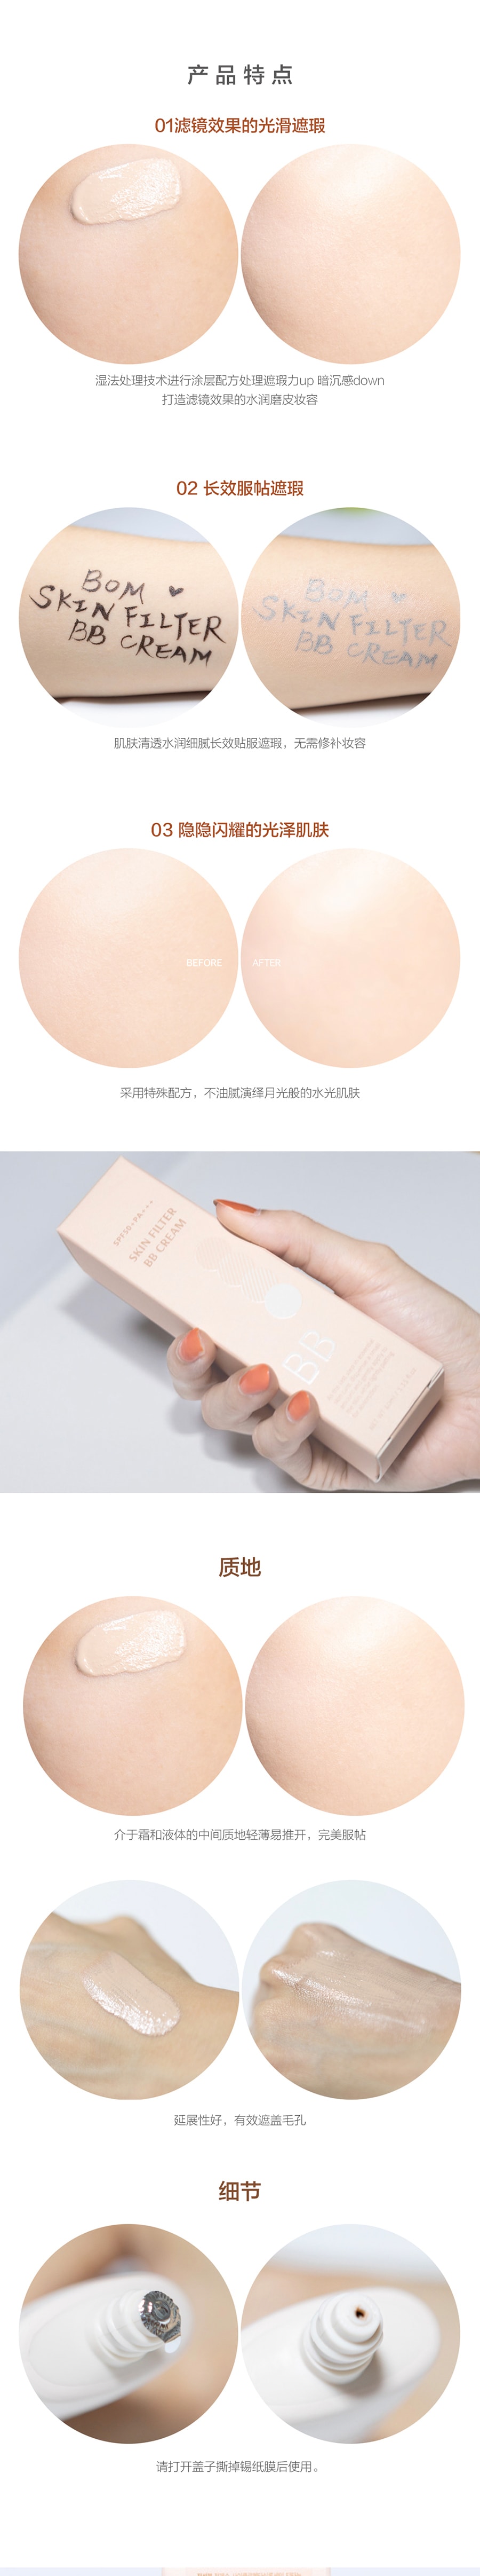 韓國BOM滋養修護BB霜 遮瑕柔光效果 磨皮妝 水潤提亮 40ml